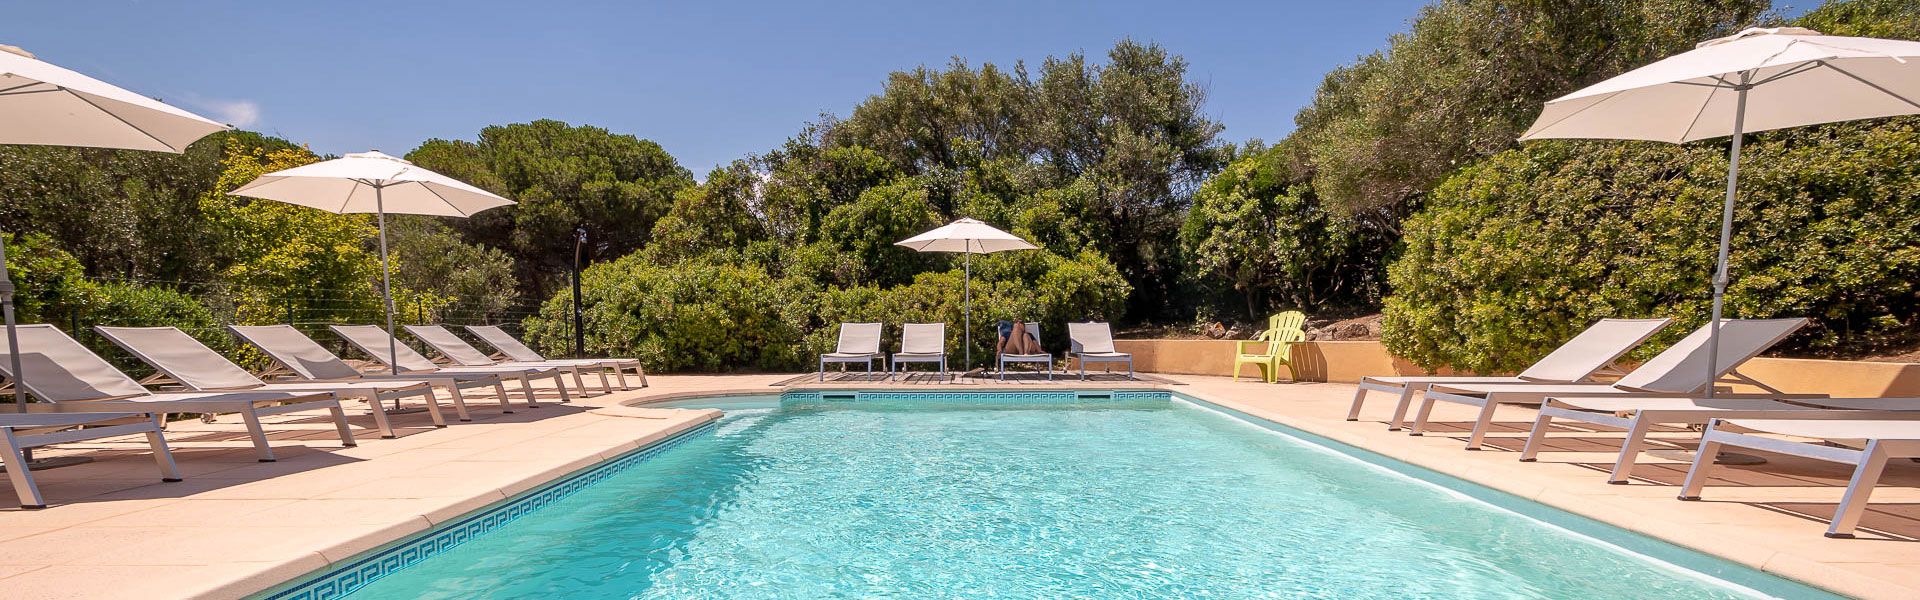 Hotel Ile Rousse piscine